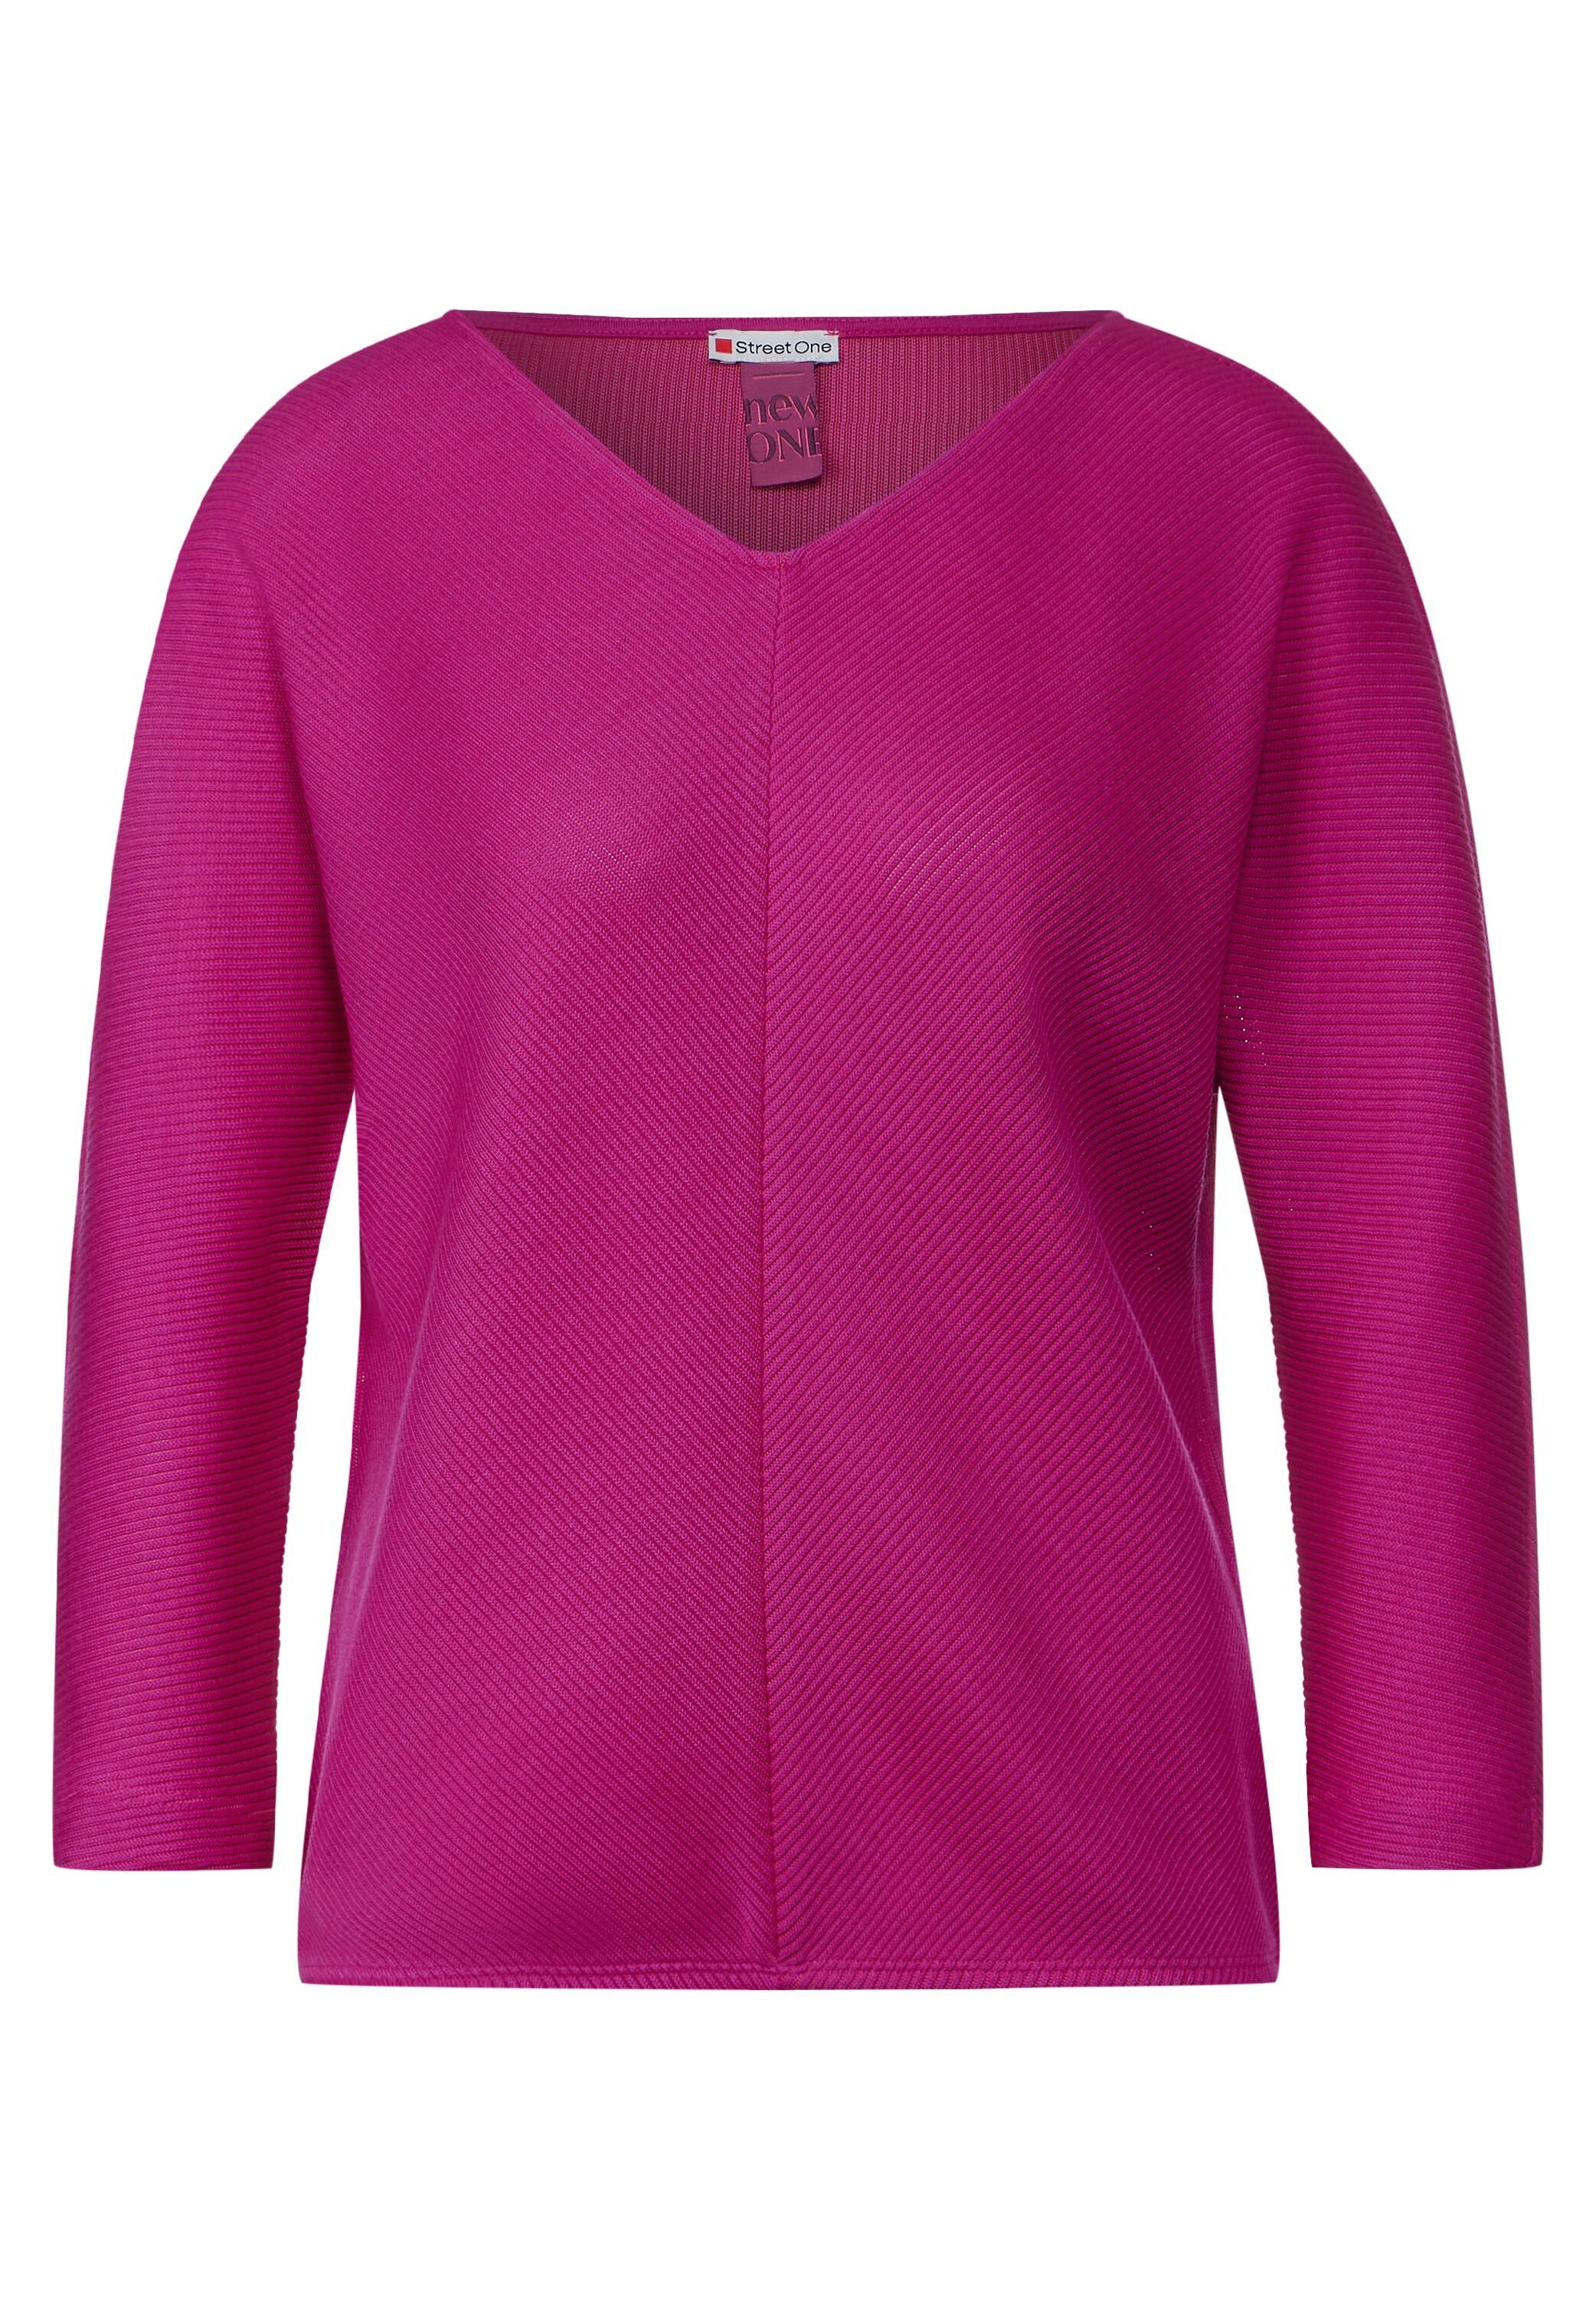 bright STREET Shirt cozy Streifen-Struktur Structure 3/4-Arm-Shirt ONE pink mit Diagonal